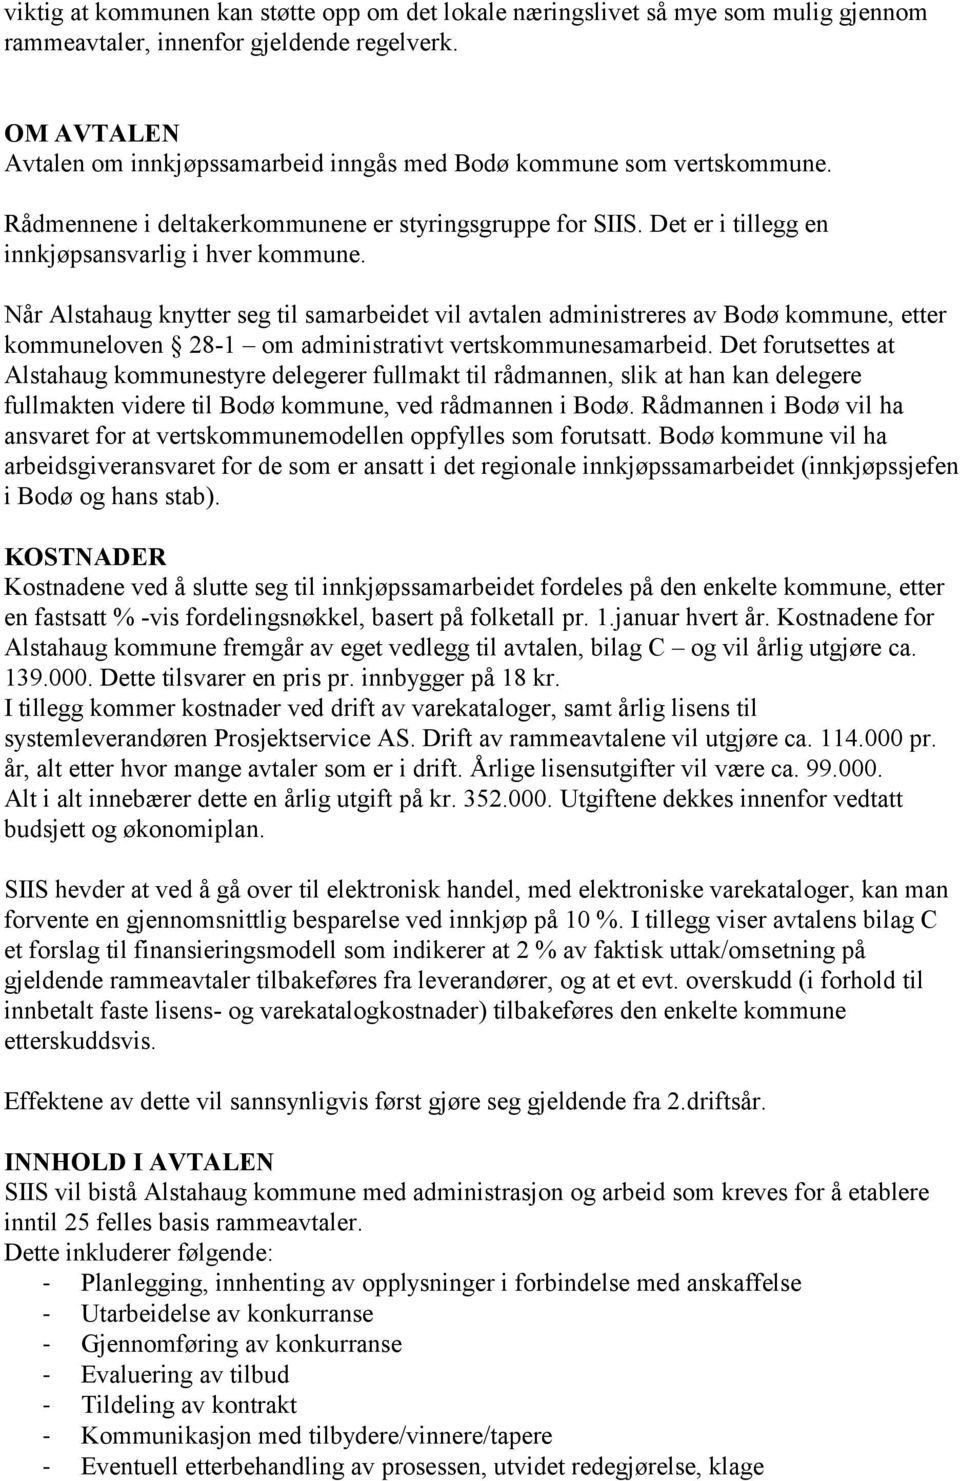 Når Alstahaug knytter seg til samarbeidet vil avtalen administreres av Bodø kommune, etter kommuneloven 28-1 om administrativt vertskommunesamarbeid.